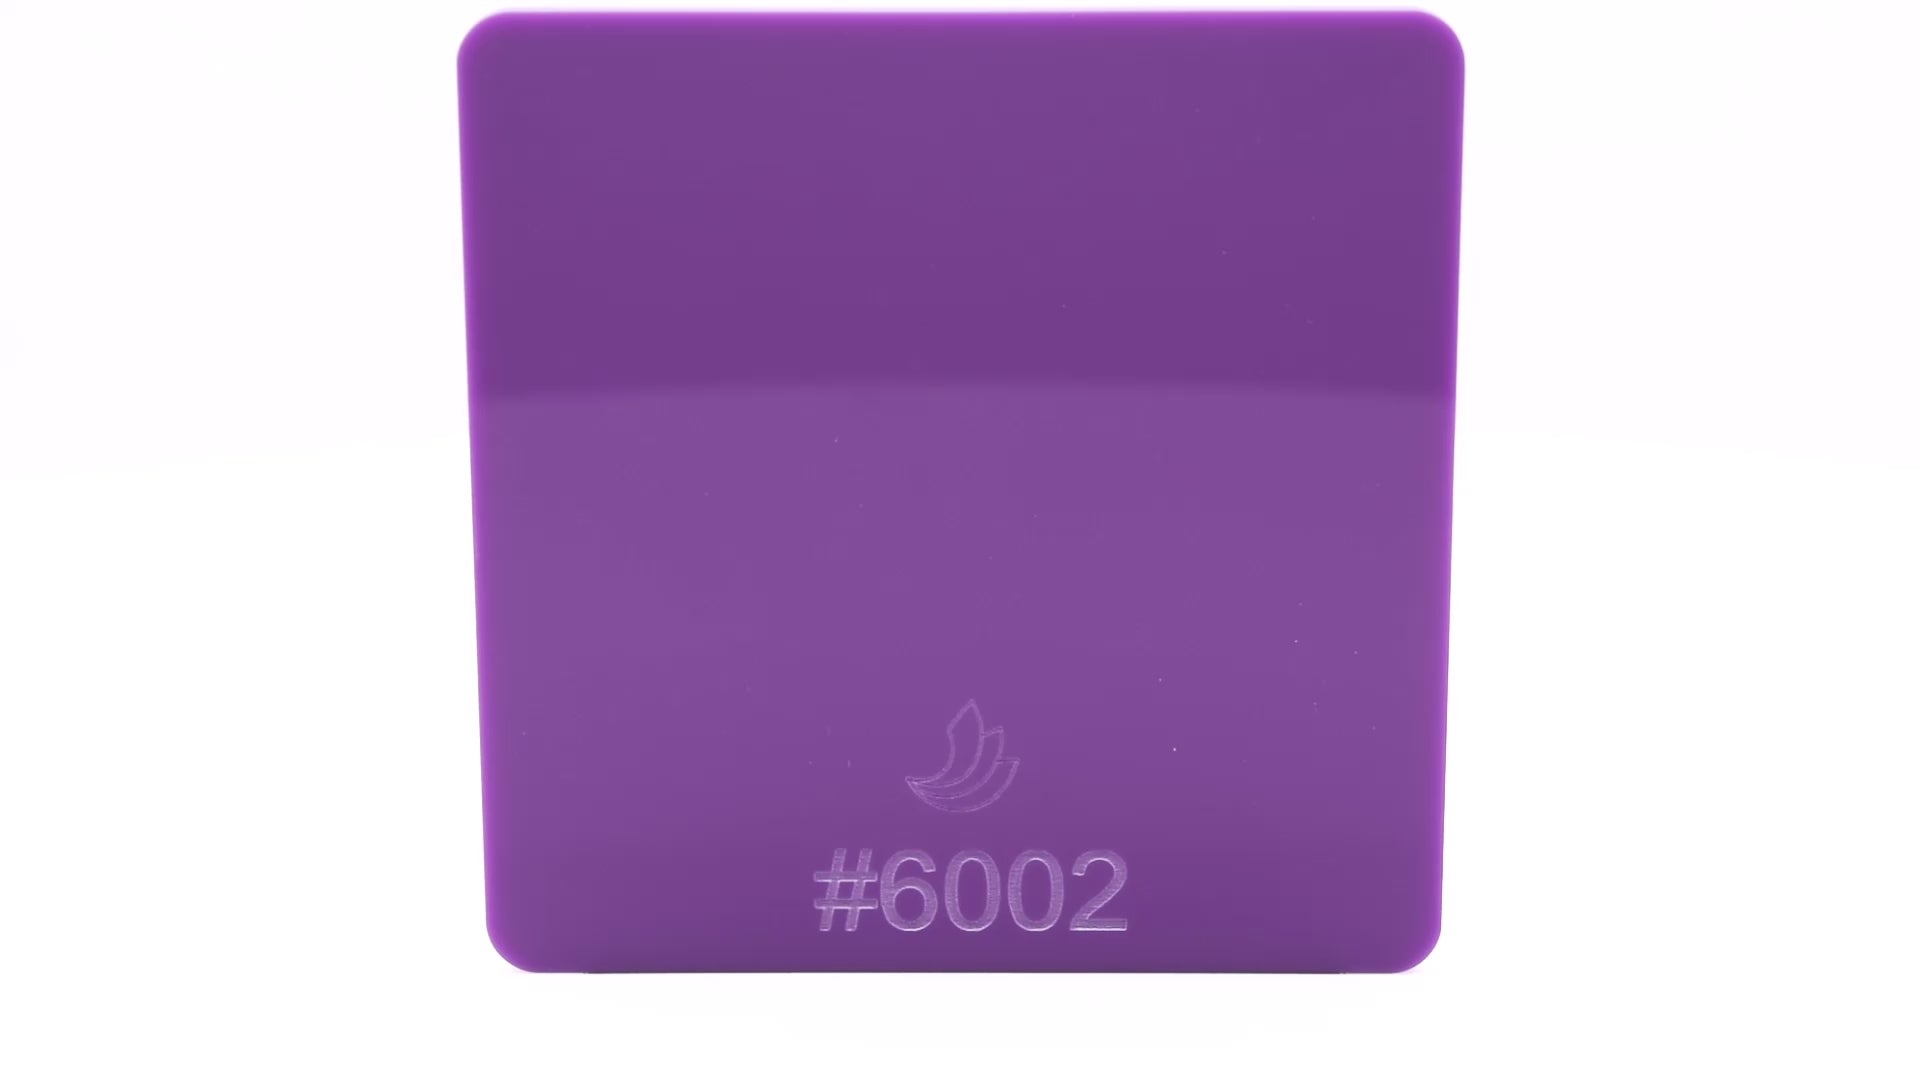 Hoja acrílica opaca violeta #6002 de 1/8"